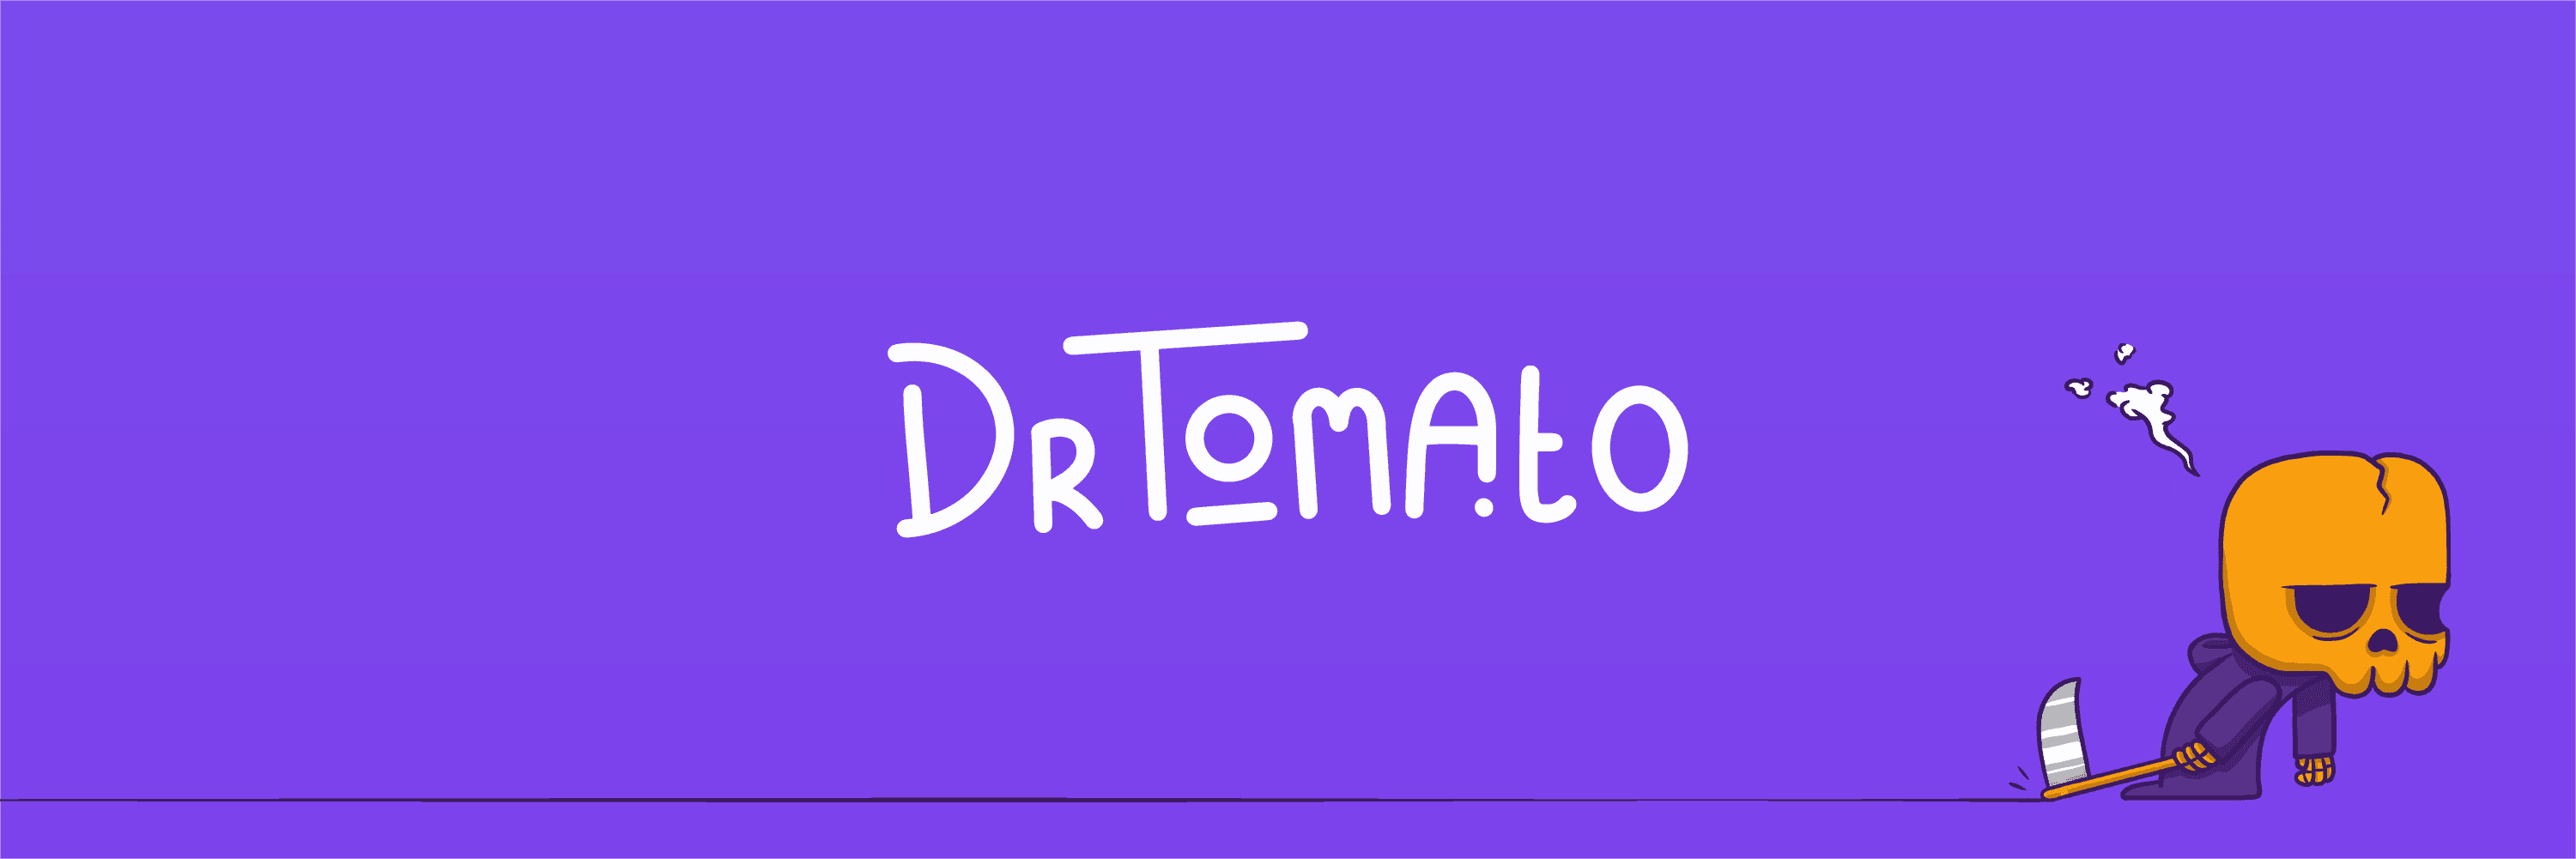 DrTomato_Wallet banner